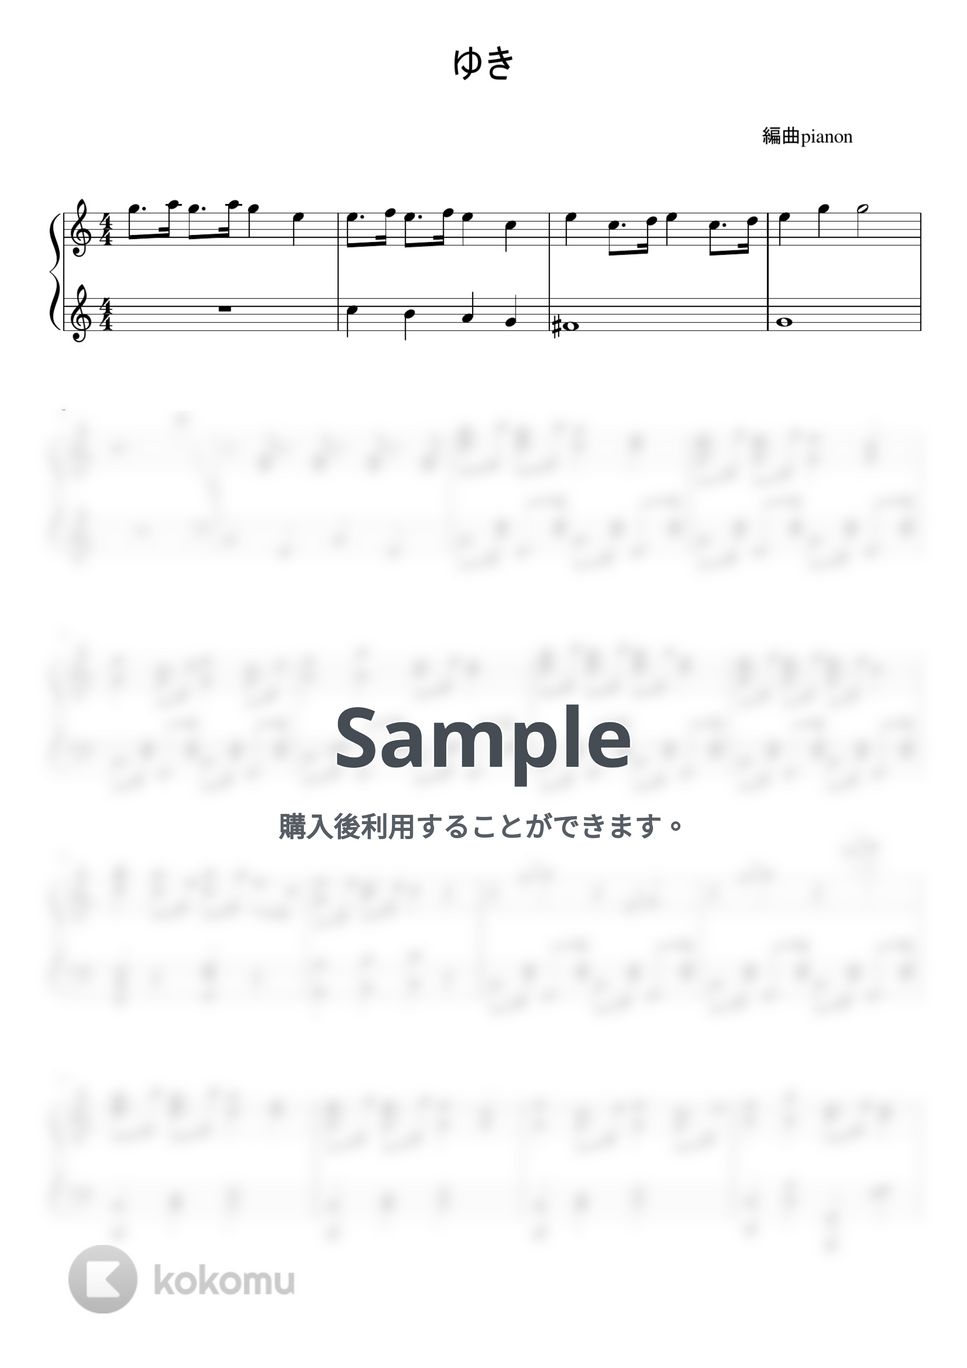 ゆき (ピアノ上級ソロ) by pianon